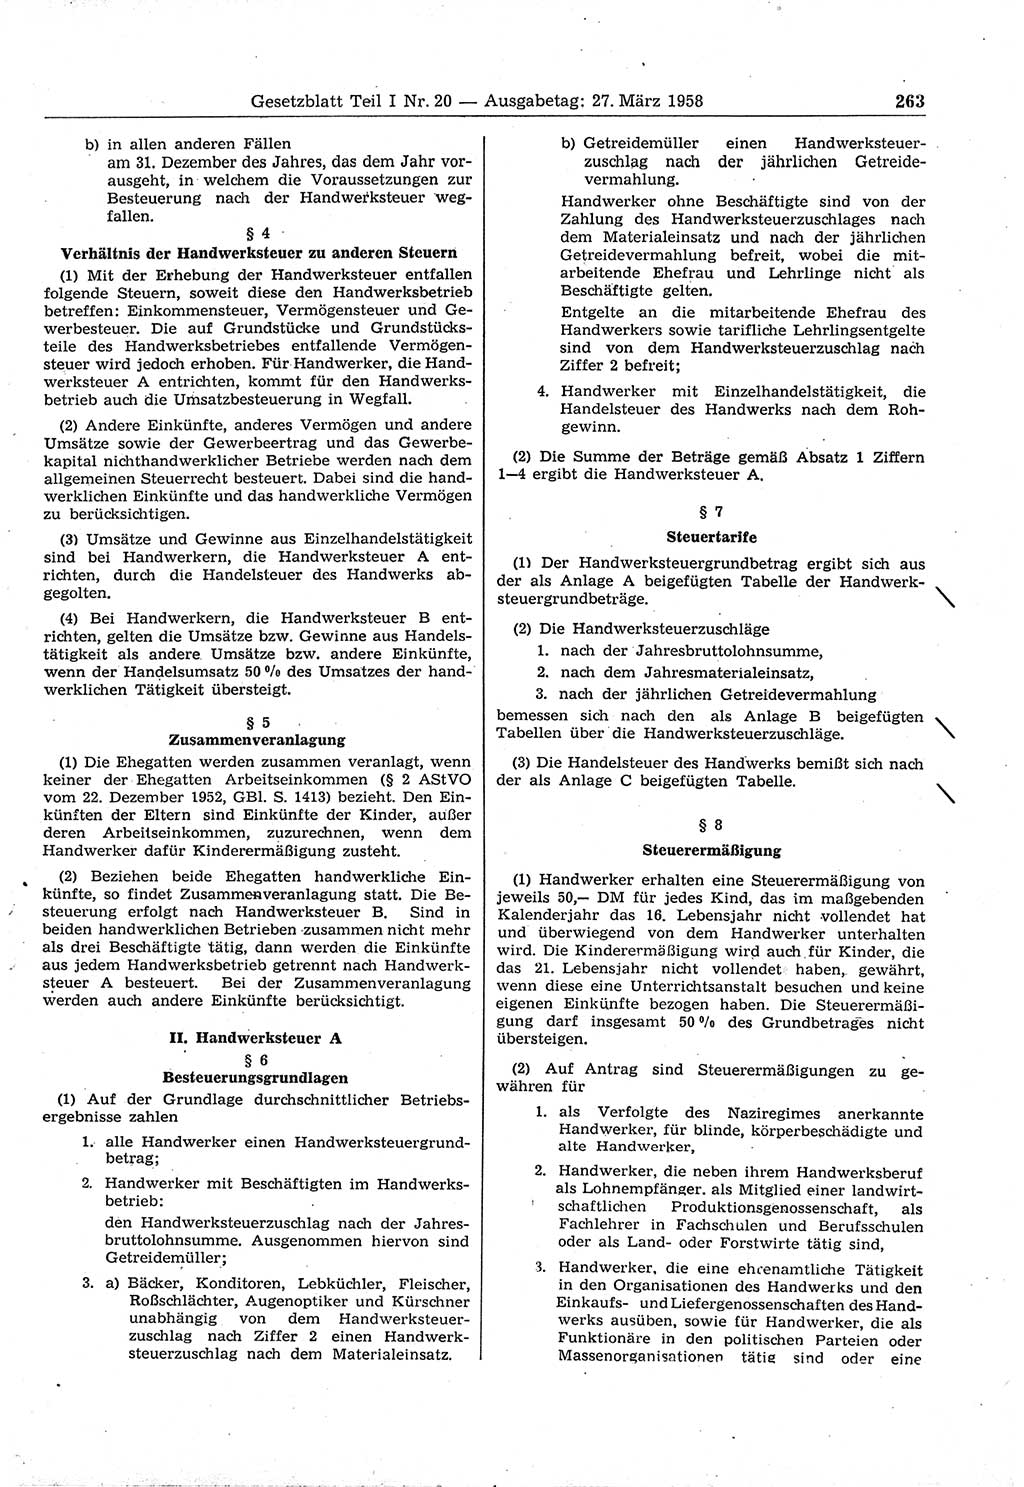 Gesetzblatt (GBl.) der Deutschen Demokratischen Republik (DDR) Teil Ⅰ 1958, Seite 263 (GBl. DDR Ⅰ 1958, S. 263)